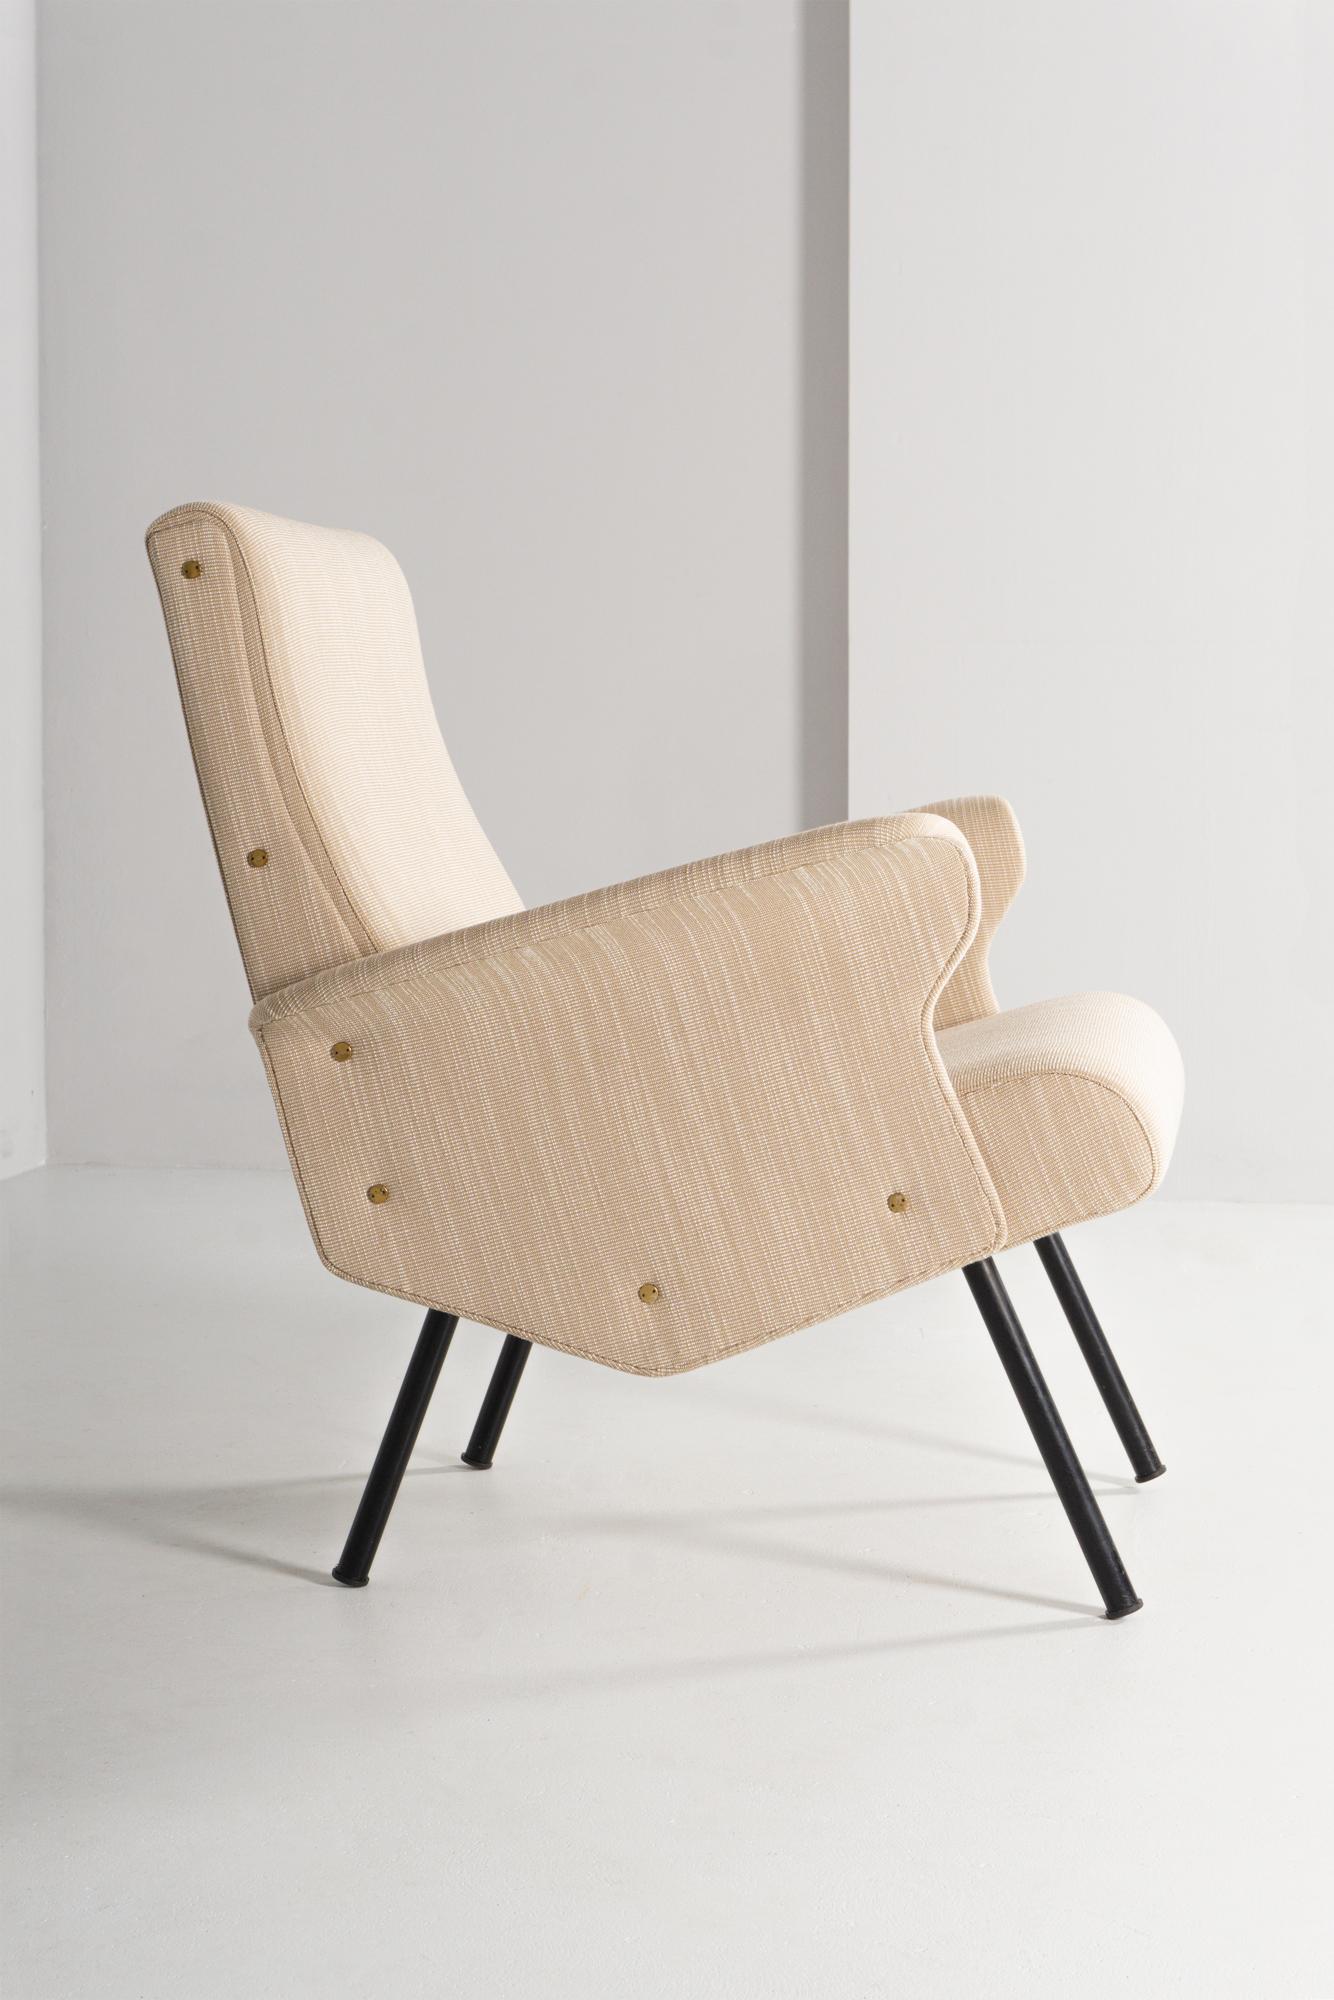 Ce meuble sophistiqué, conçu par Gianfranco Frattini en 1960 pour Cassina, se distingue par sa ligne sculturelle et futuriste. La housse, renouvelée comme la mousse, est faite du meilleur cuir.
Frattini était un architecte et designer italien. Il